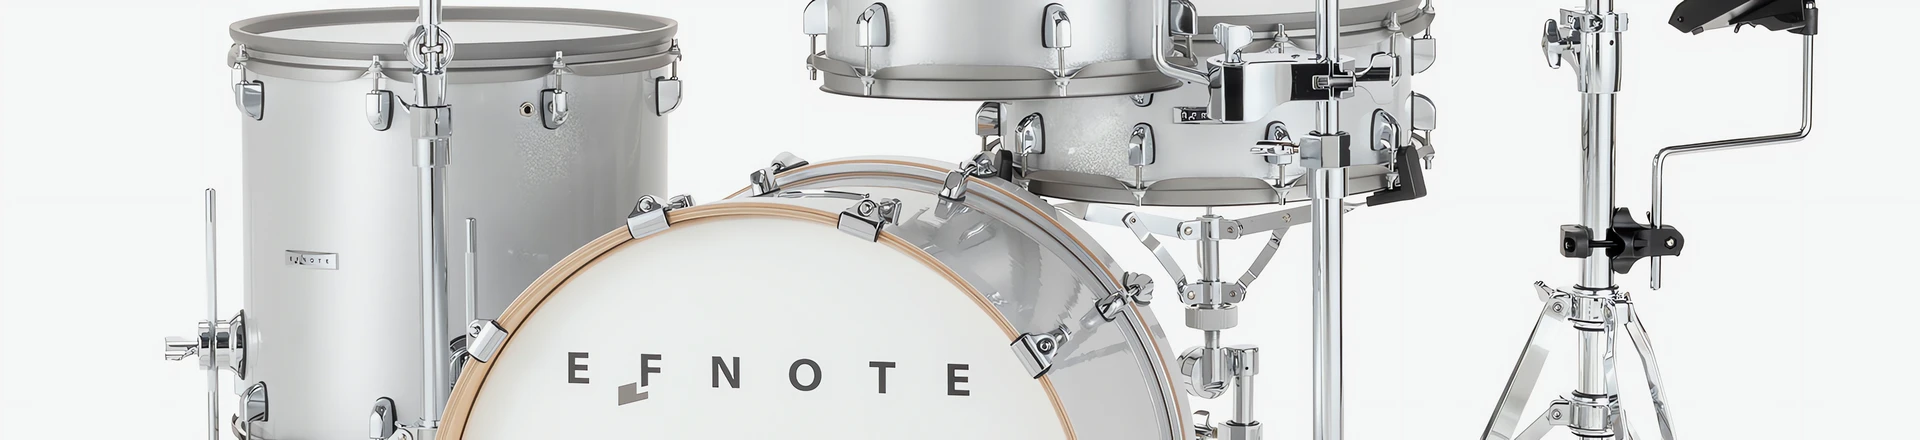 NEW GOLD KIT - Nowy zestaw brzmień do instrumentów EFNOTE